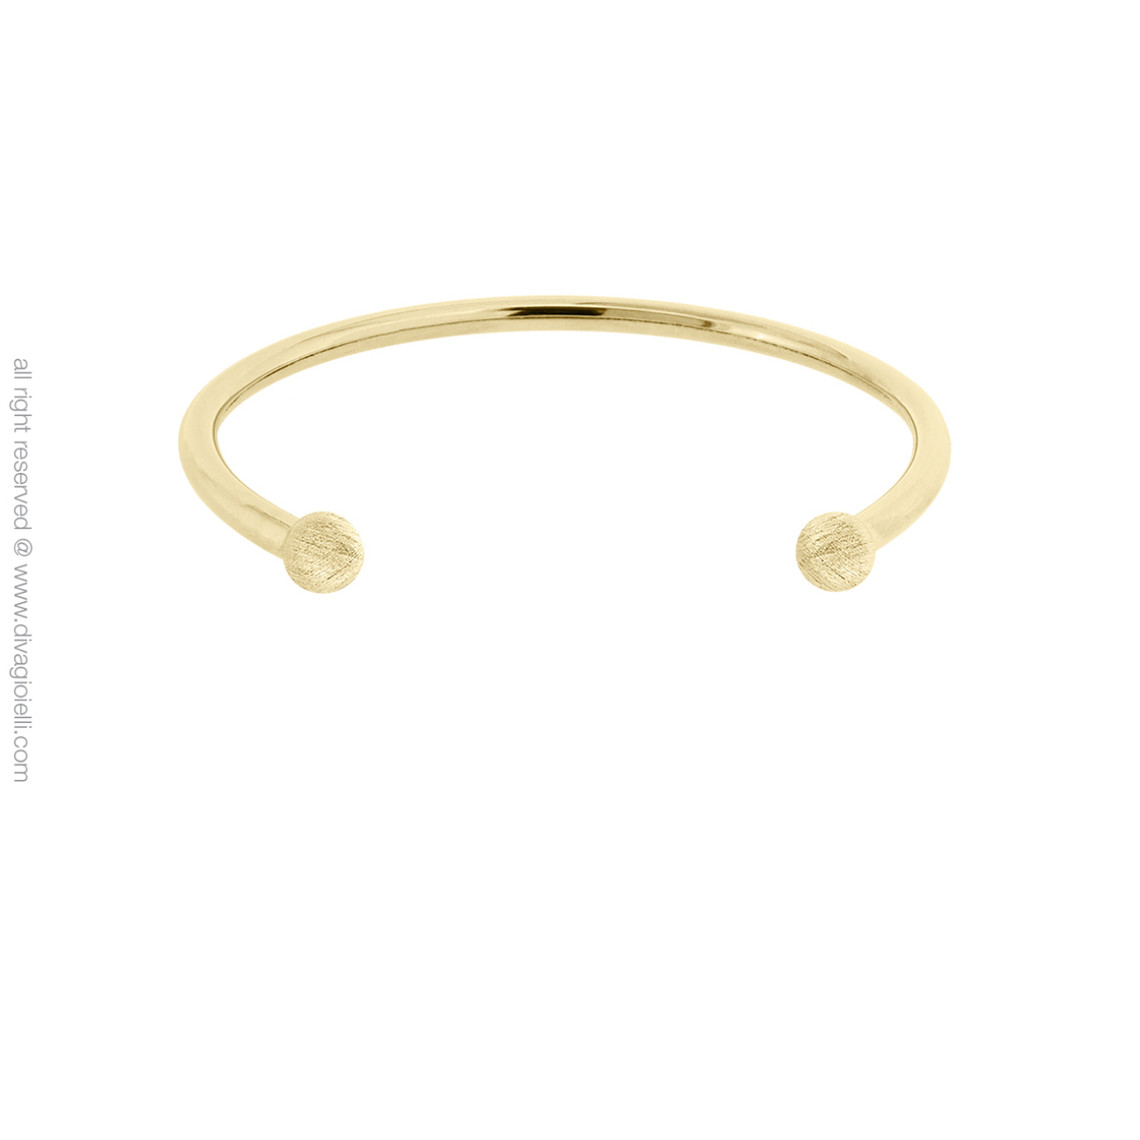 bracelet 17759-002 argent doré - diva gioielli eclisse